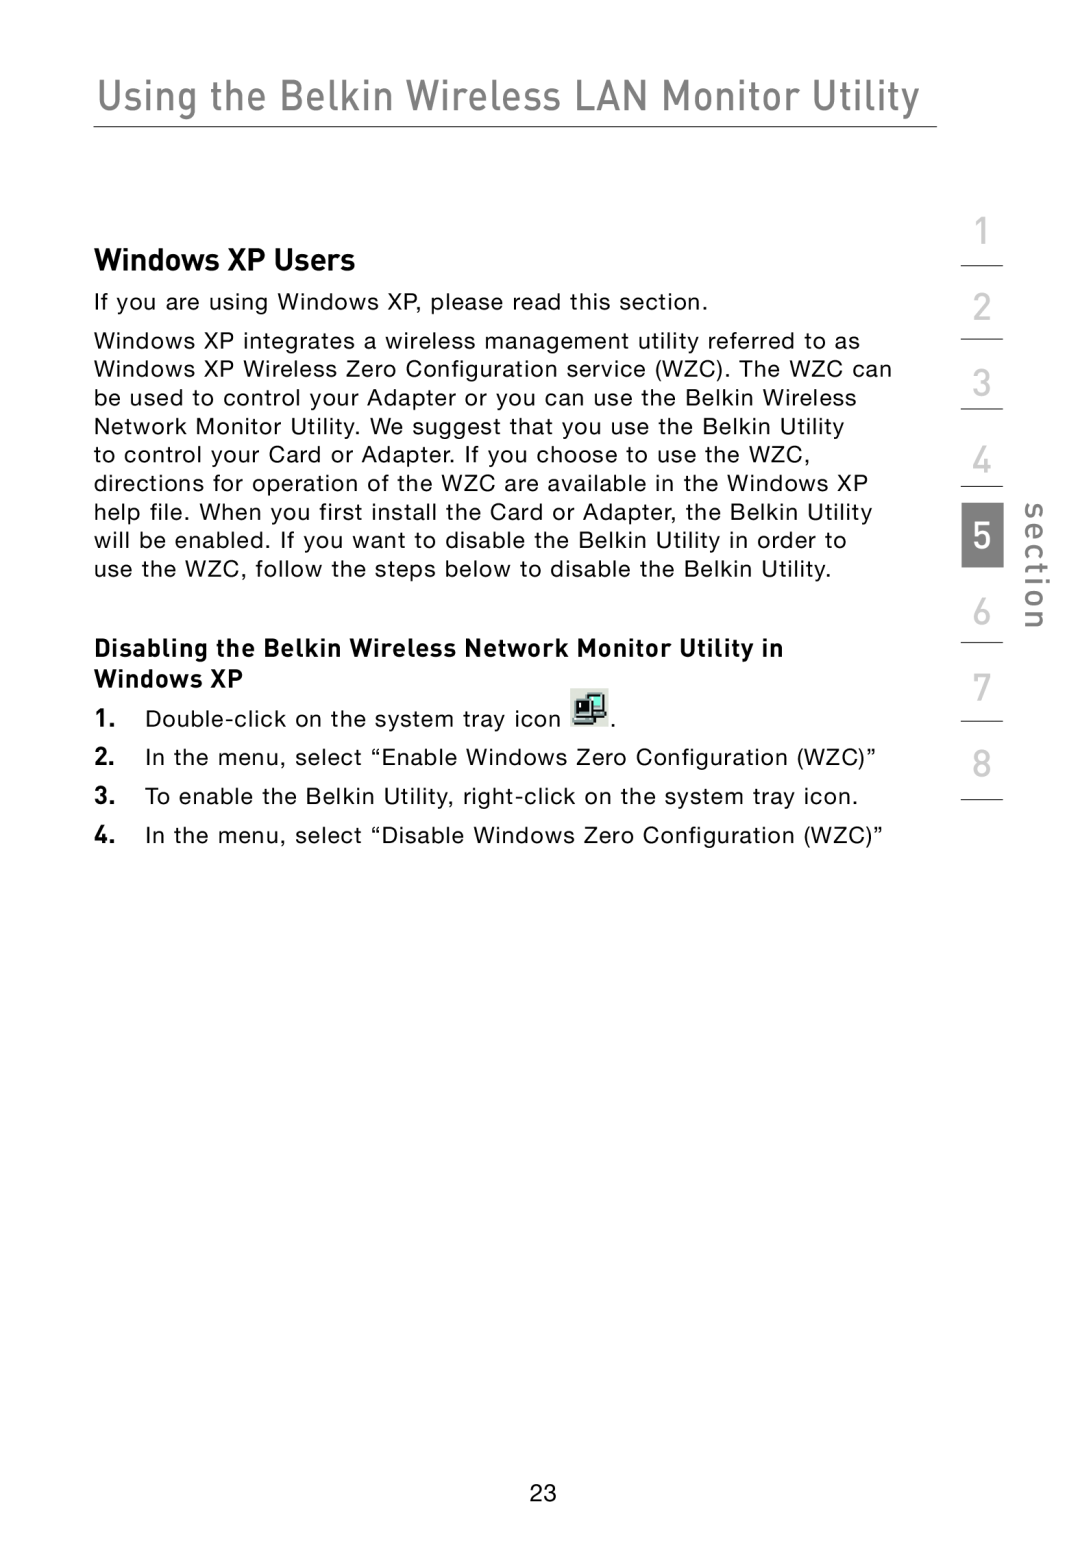 Belkin F5D7051 manual Windows XP Users, Disabling the Belkin Wireless Network Monitor Utility in Windows XP, section 